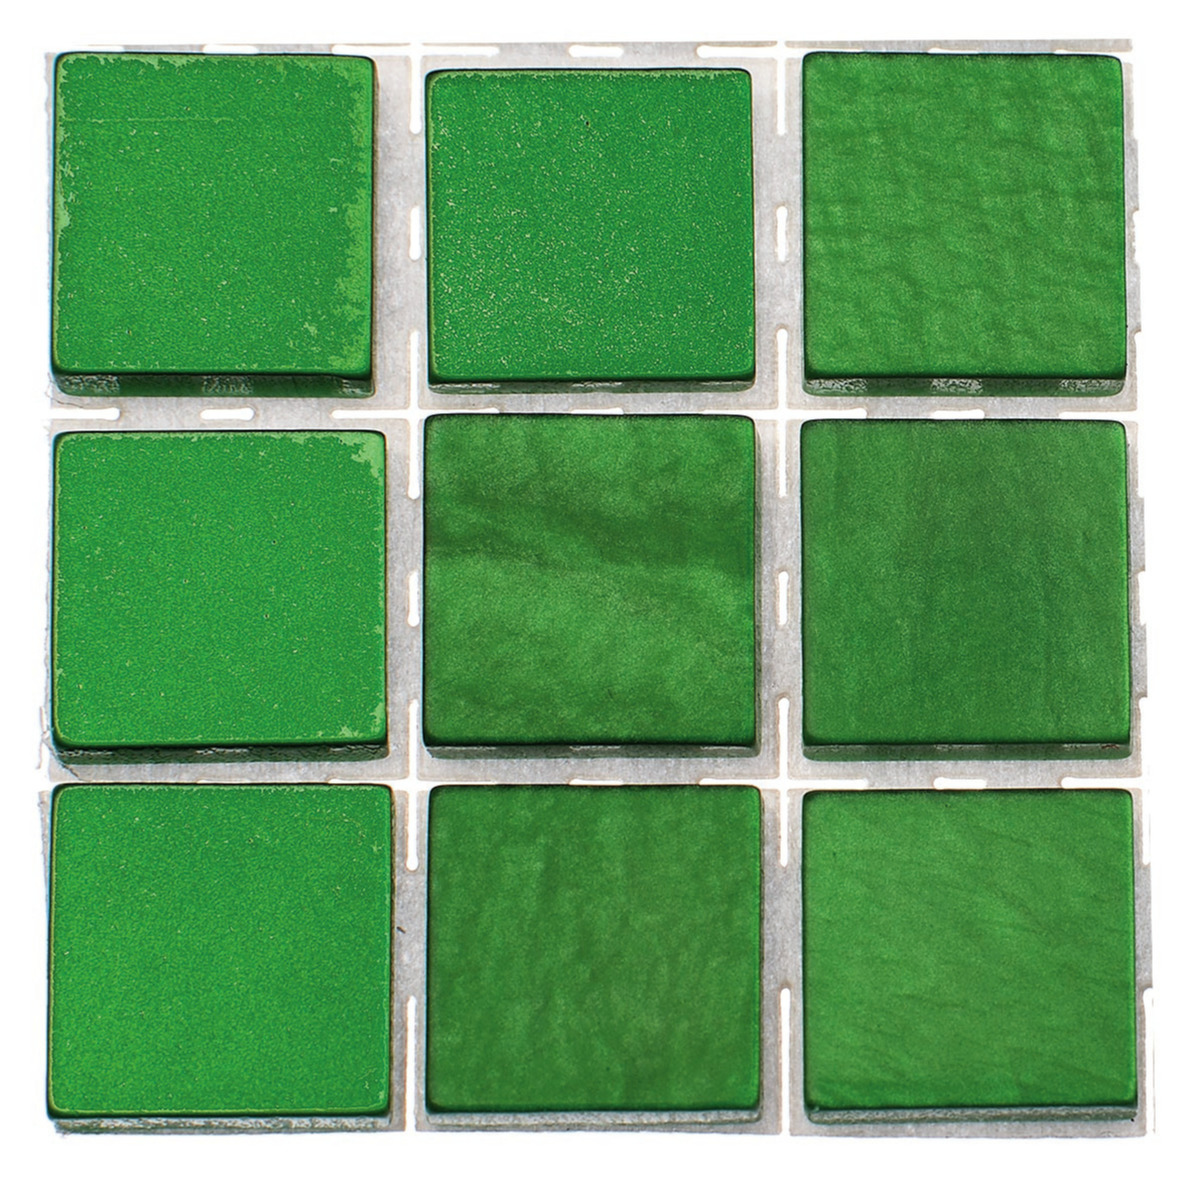 189x stuks mozaieken maken steentjes-tegels kleur groen 10 x 10 x 2 mm